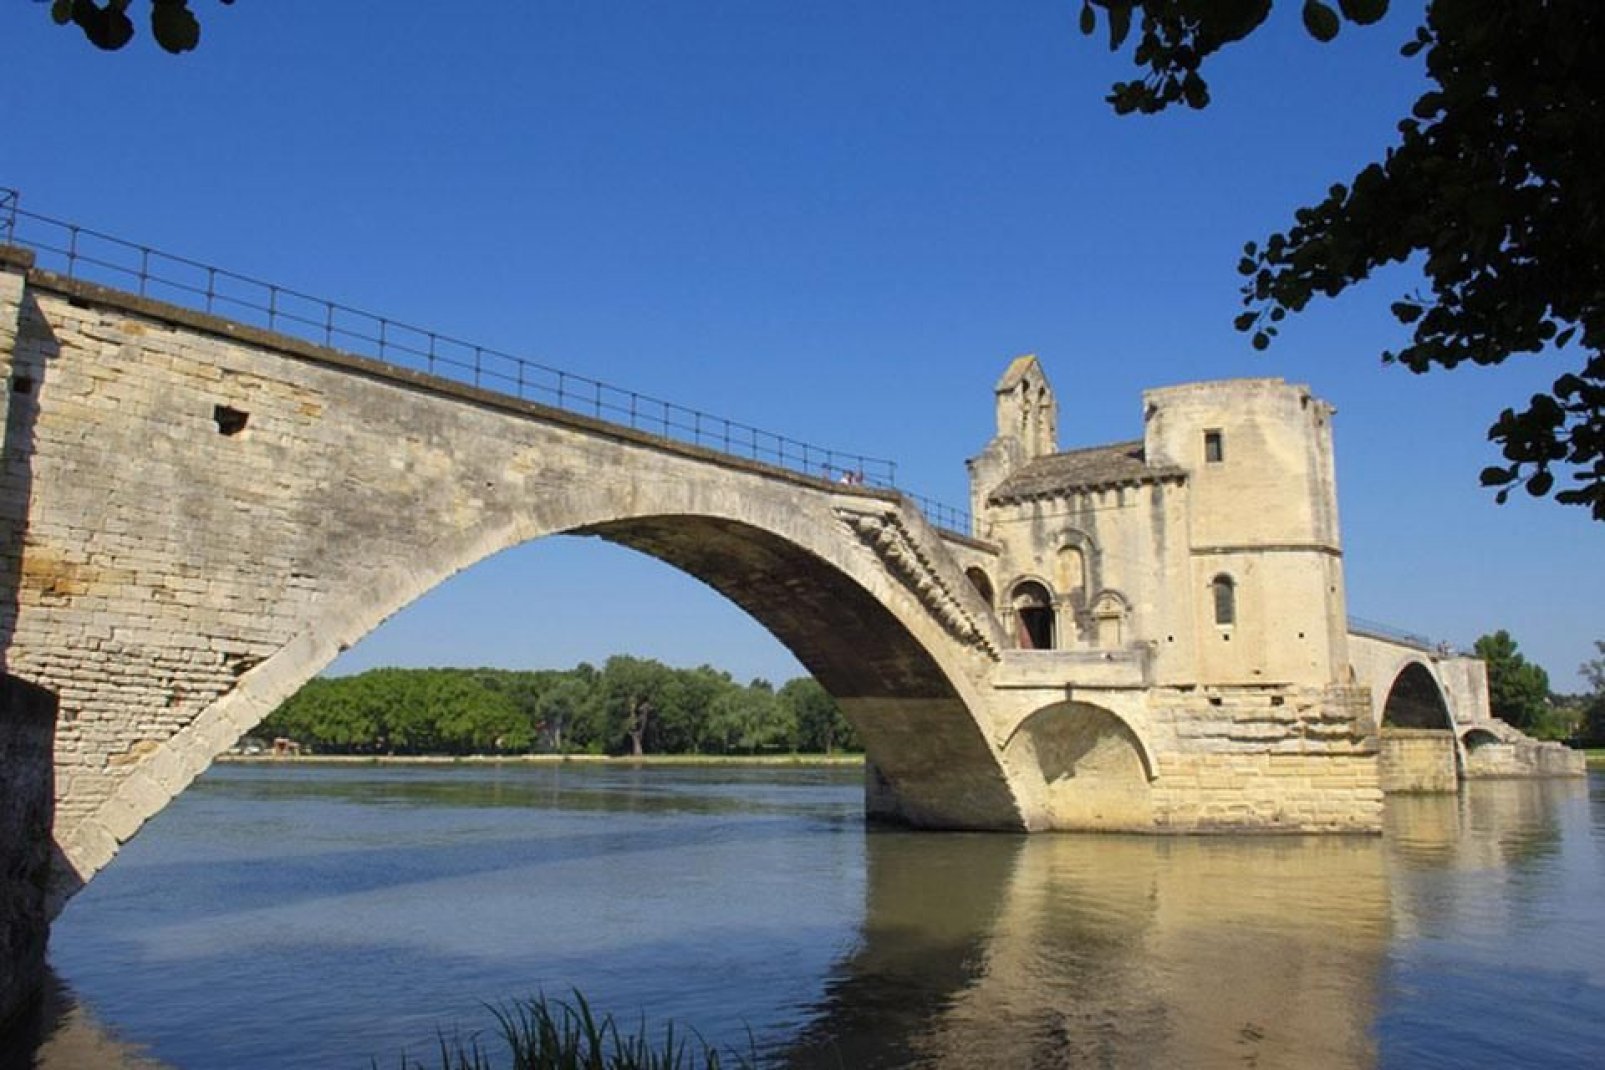 Il celebre Ponte di Avignone (proprio quello della canzone) si chiama in realtà Ponte Saint-Bénézet  e fu realizzato nel 1185.